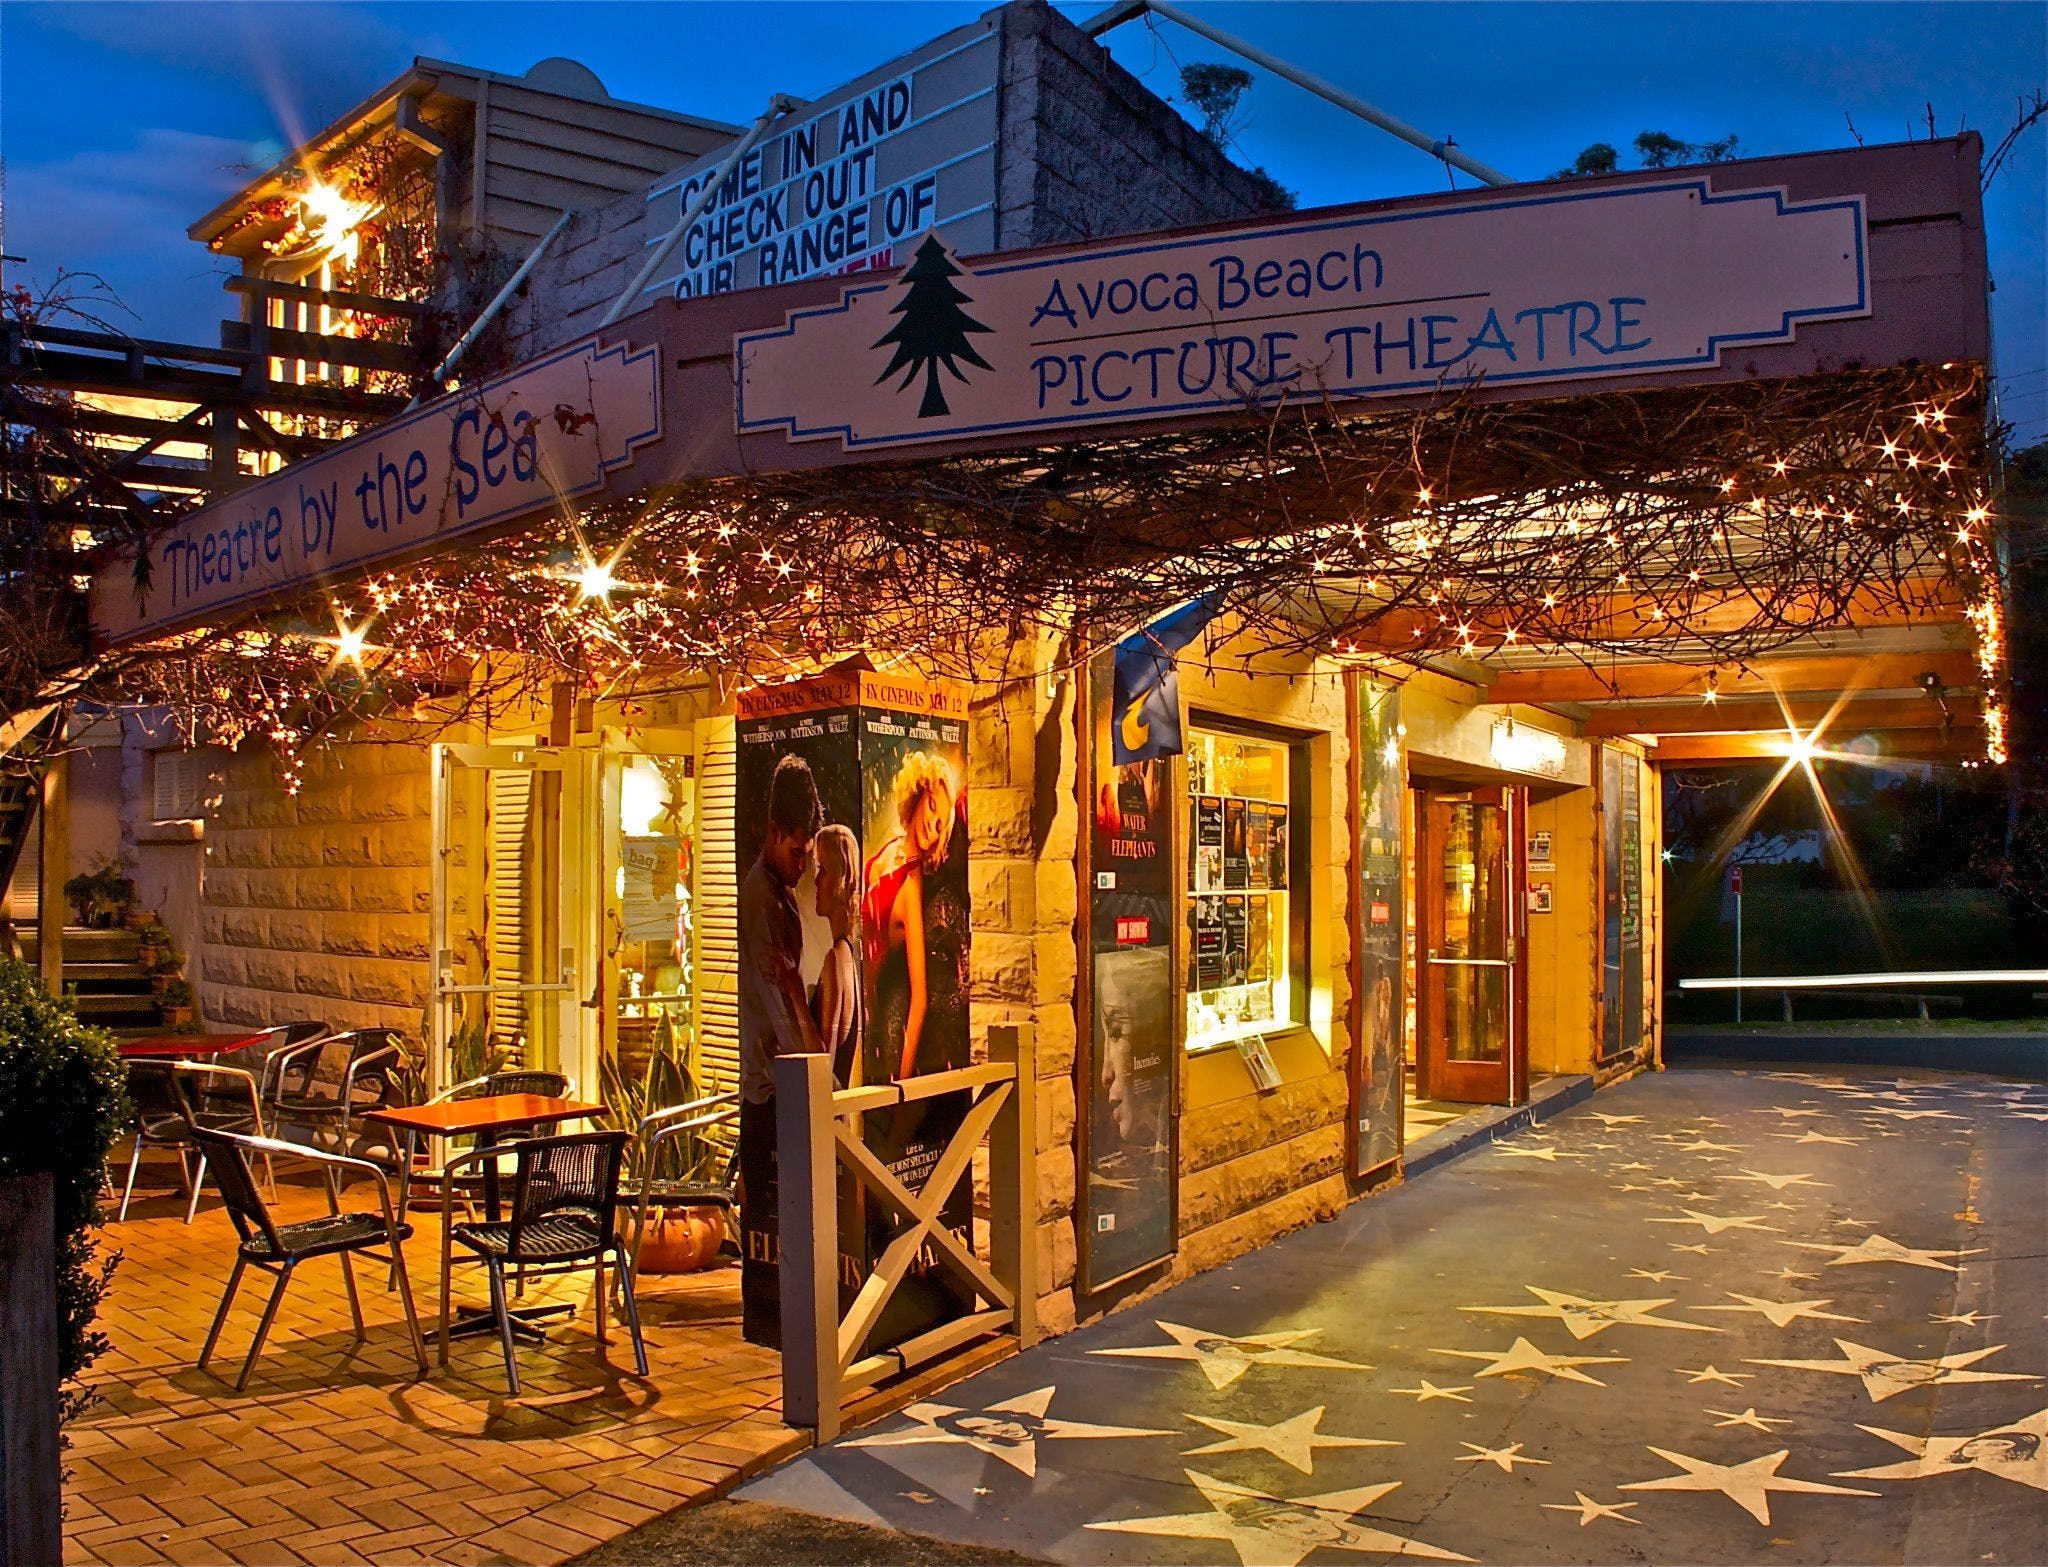 Avoca Beach Picture Theatre - St Kilda Accommodation